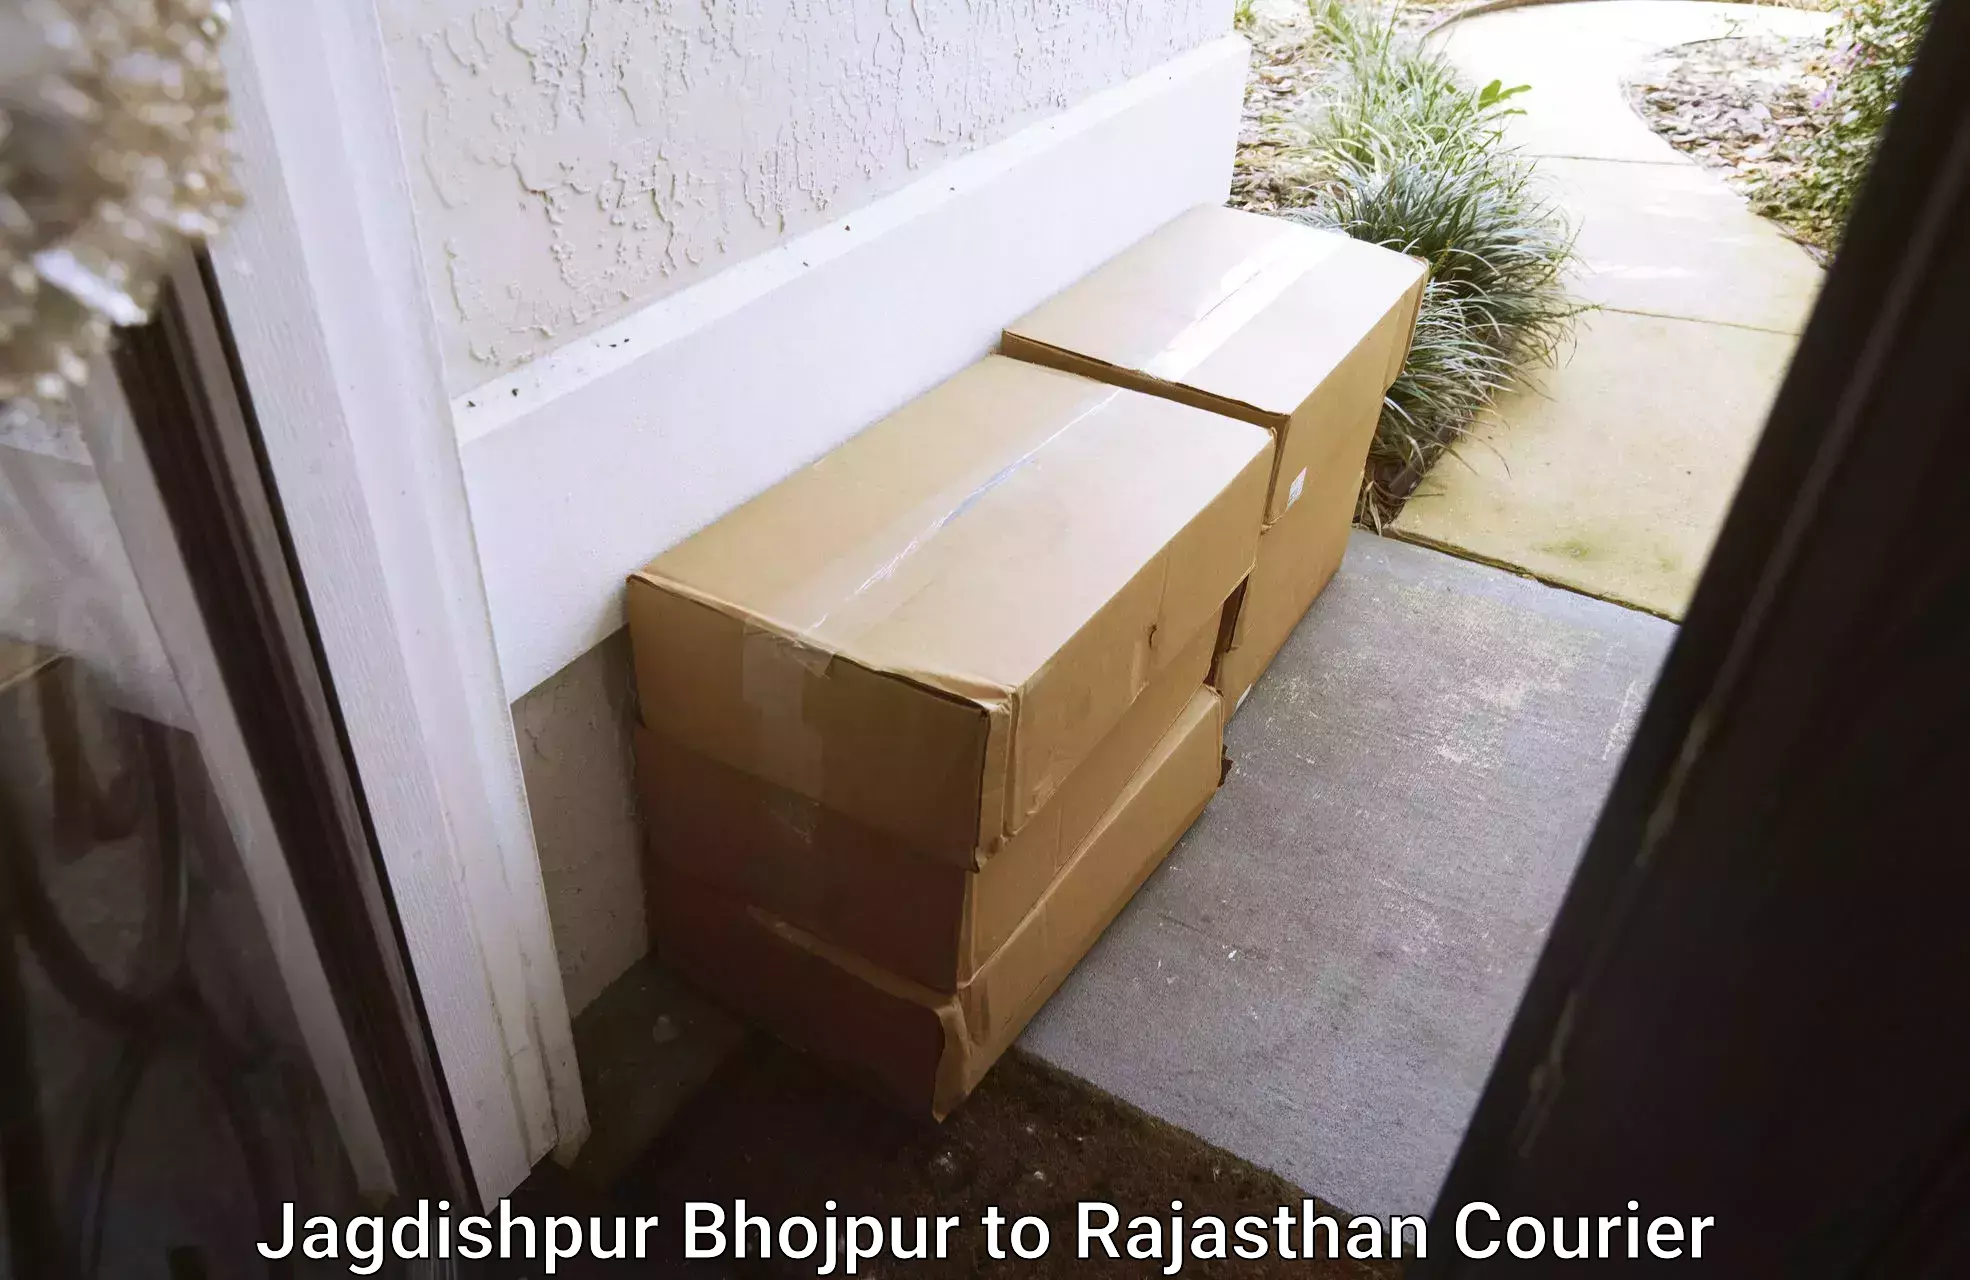 Professional moving company Jagdishpur Bhojpur to Khairthal